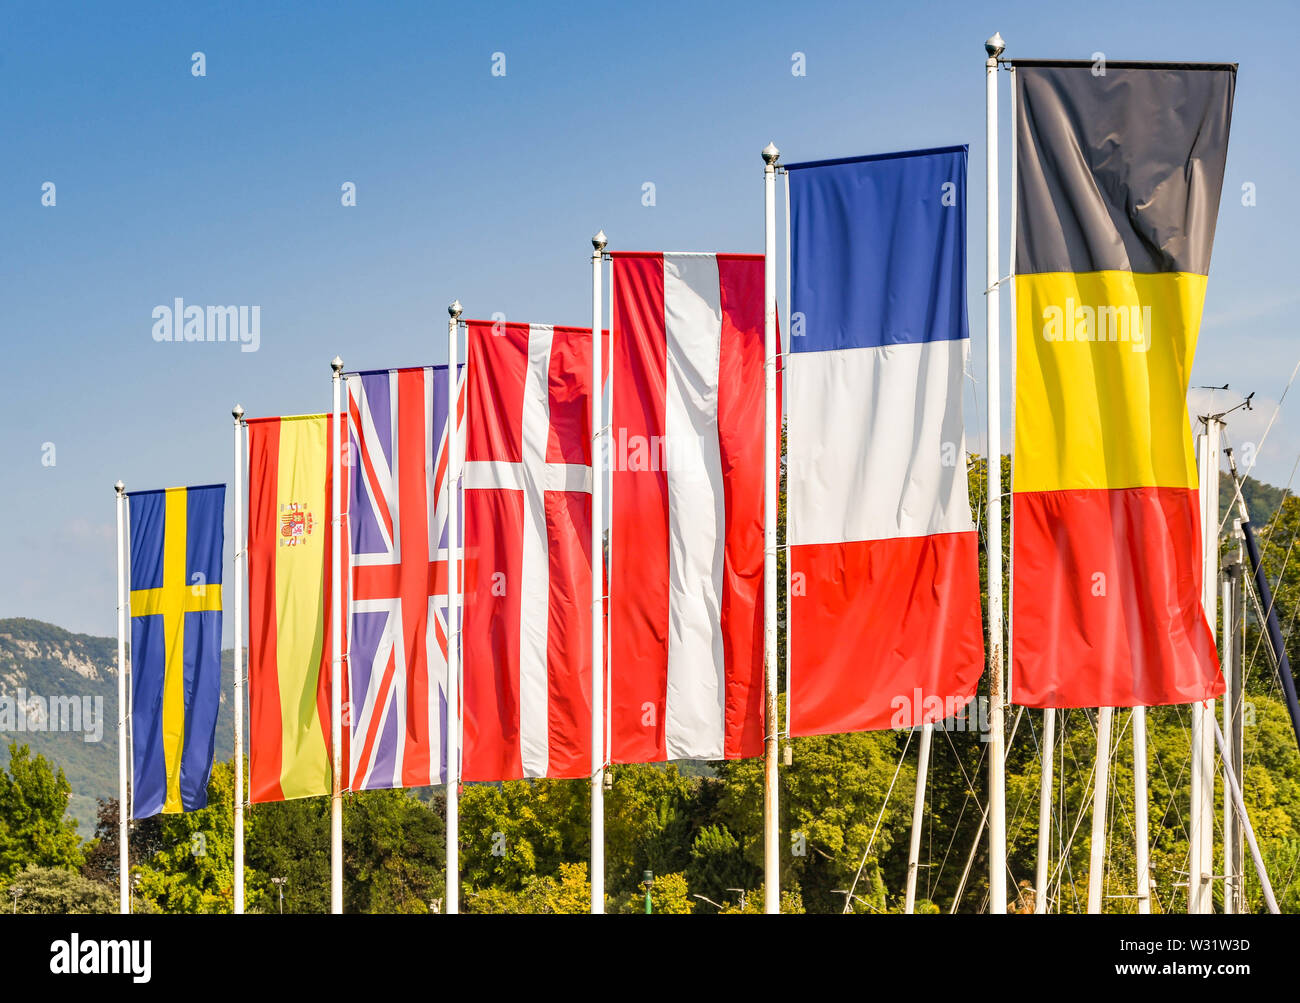 Flaggen einiger Mitgliedstaaten der Europäischen Union, einschließlich des Vereinigten Königreichs, vor blauem Himmel Stockfoto